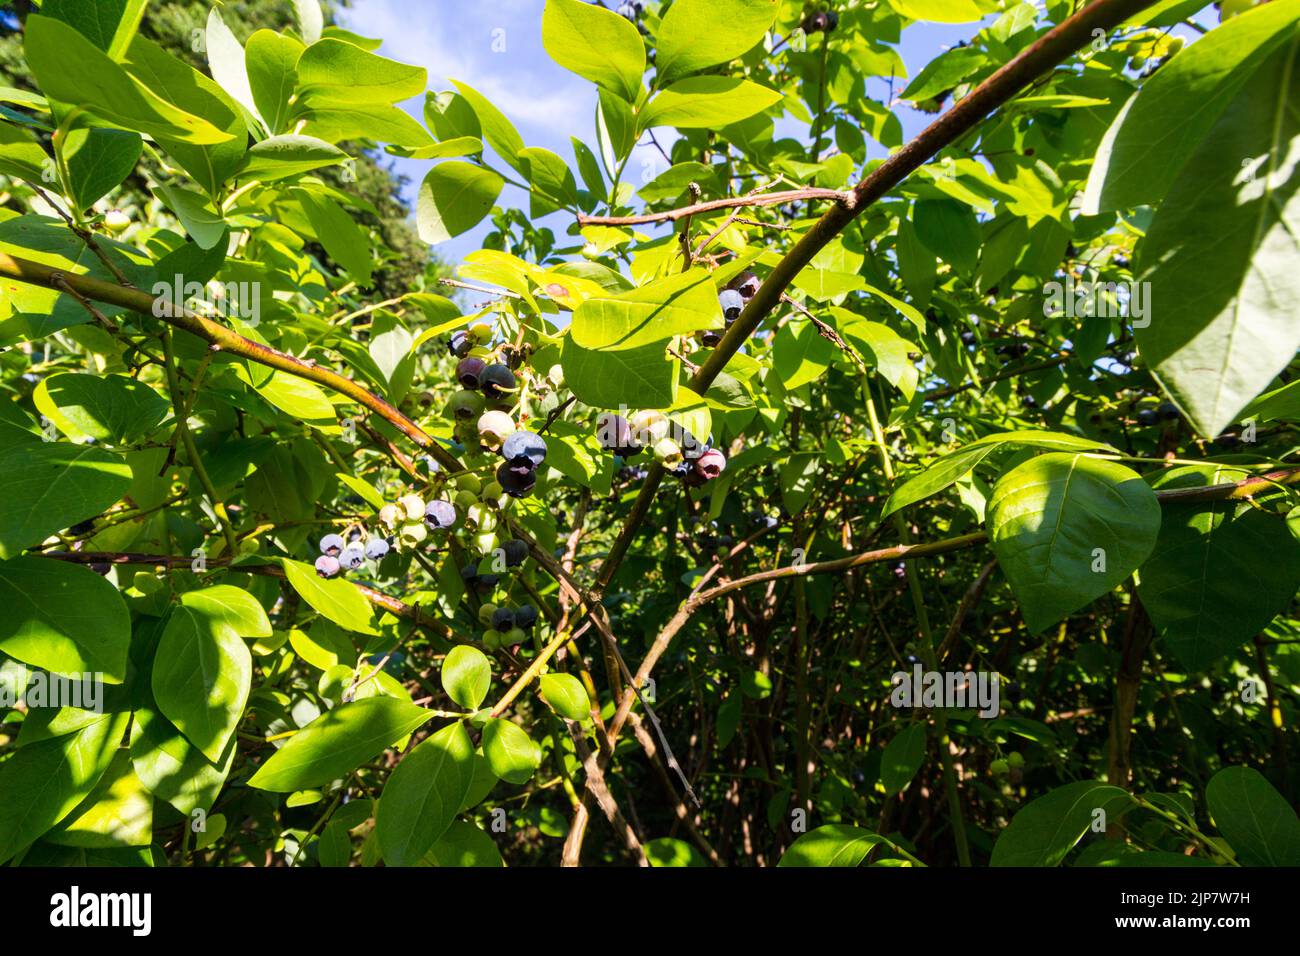 Bleuet de la haute-buisson du Nord, Vaccinium corymbosum 'Bluecrop' cultivé dans le jardin, Hongrie, Europe Banque D'Images